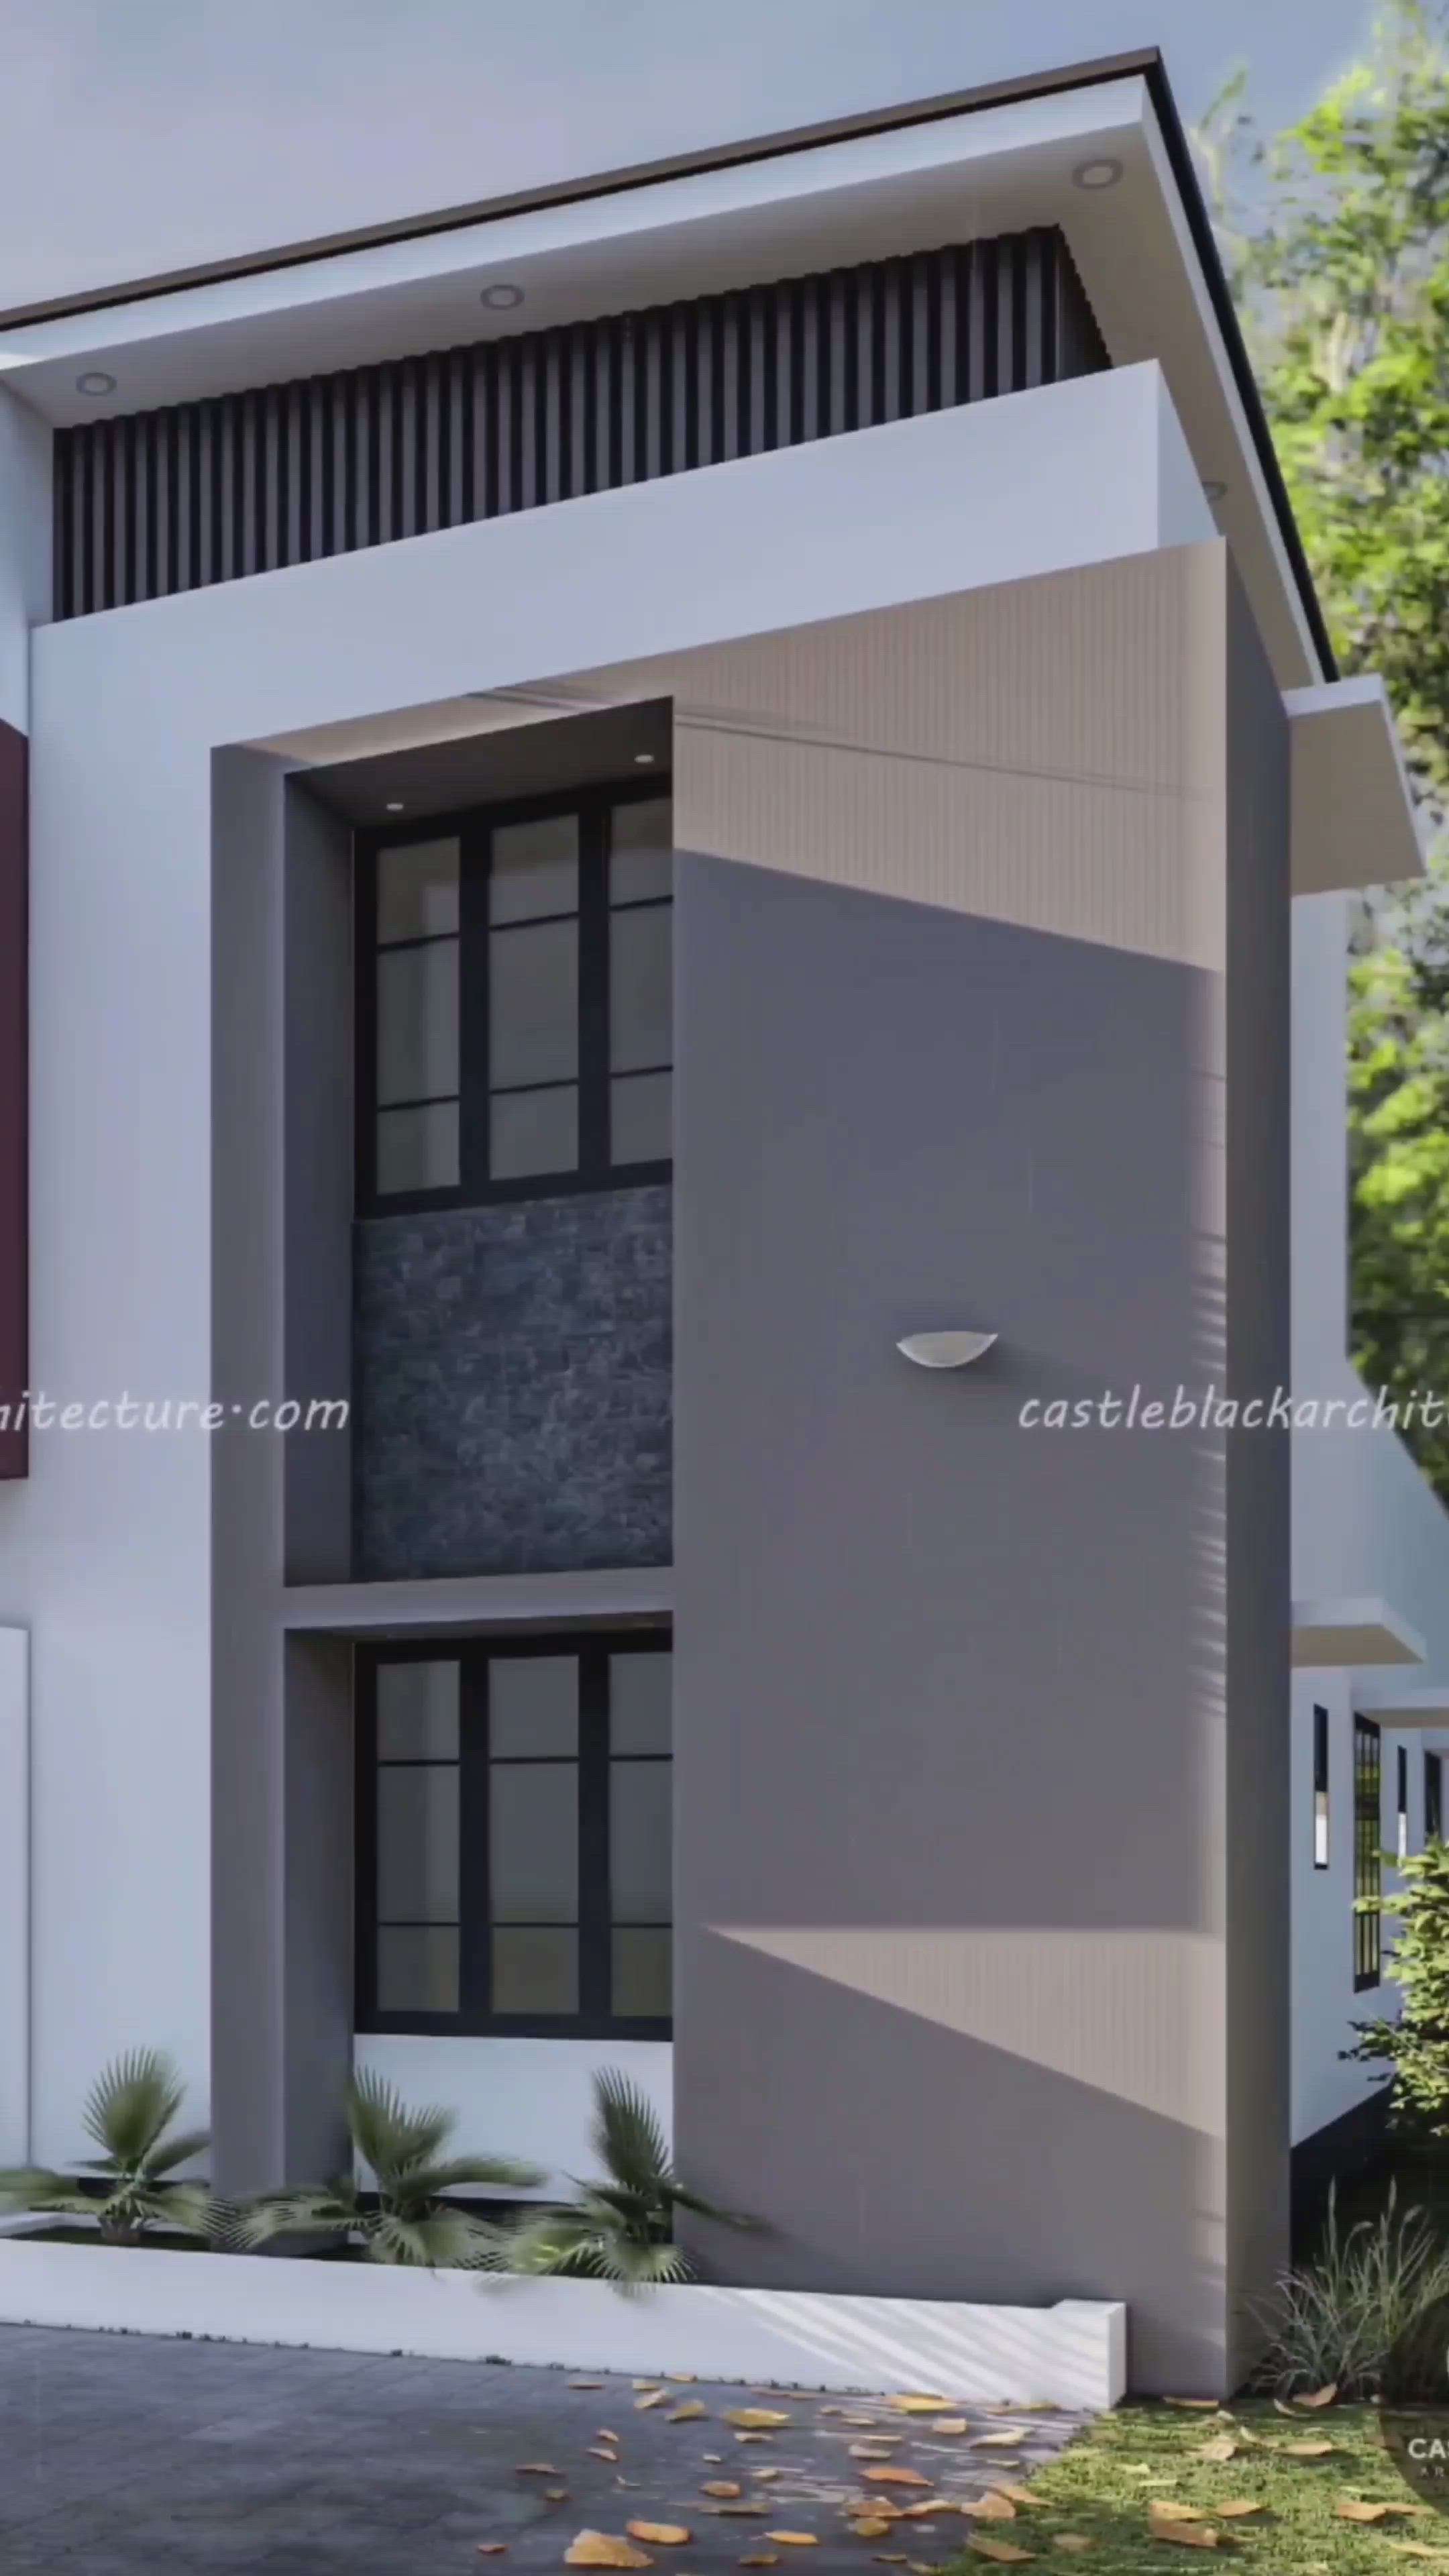 കുറഞ്ഞ ചിലവിൽ നിങ്ങളുടെ വീടിൻ്റെ floor  Plan, 3D exterior, 3d top interior view, 2D drawings

#kochi #kollam #kerala #architecturephotography #architecturedesign #interiordesign #exteriordesign #construction #modernhome #contemporary #3d #lumion